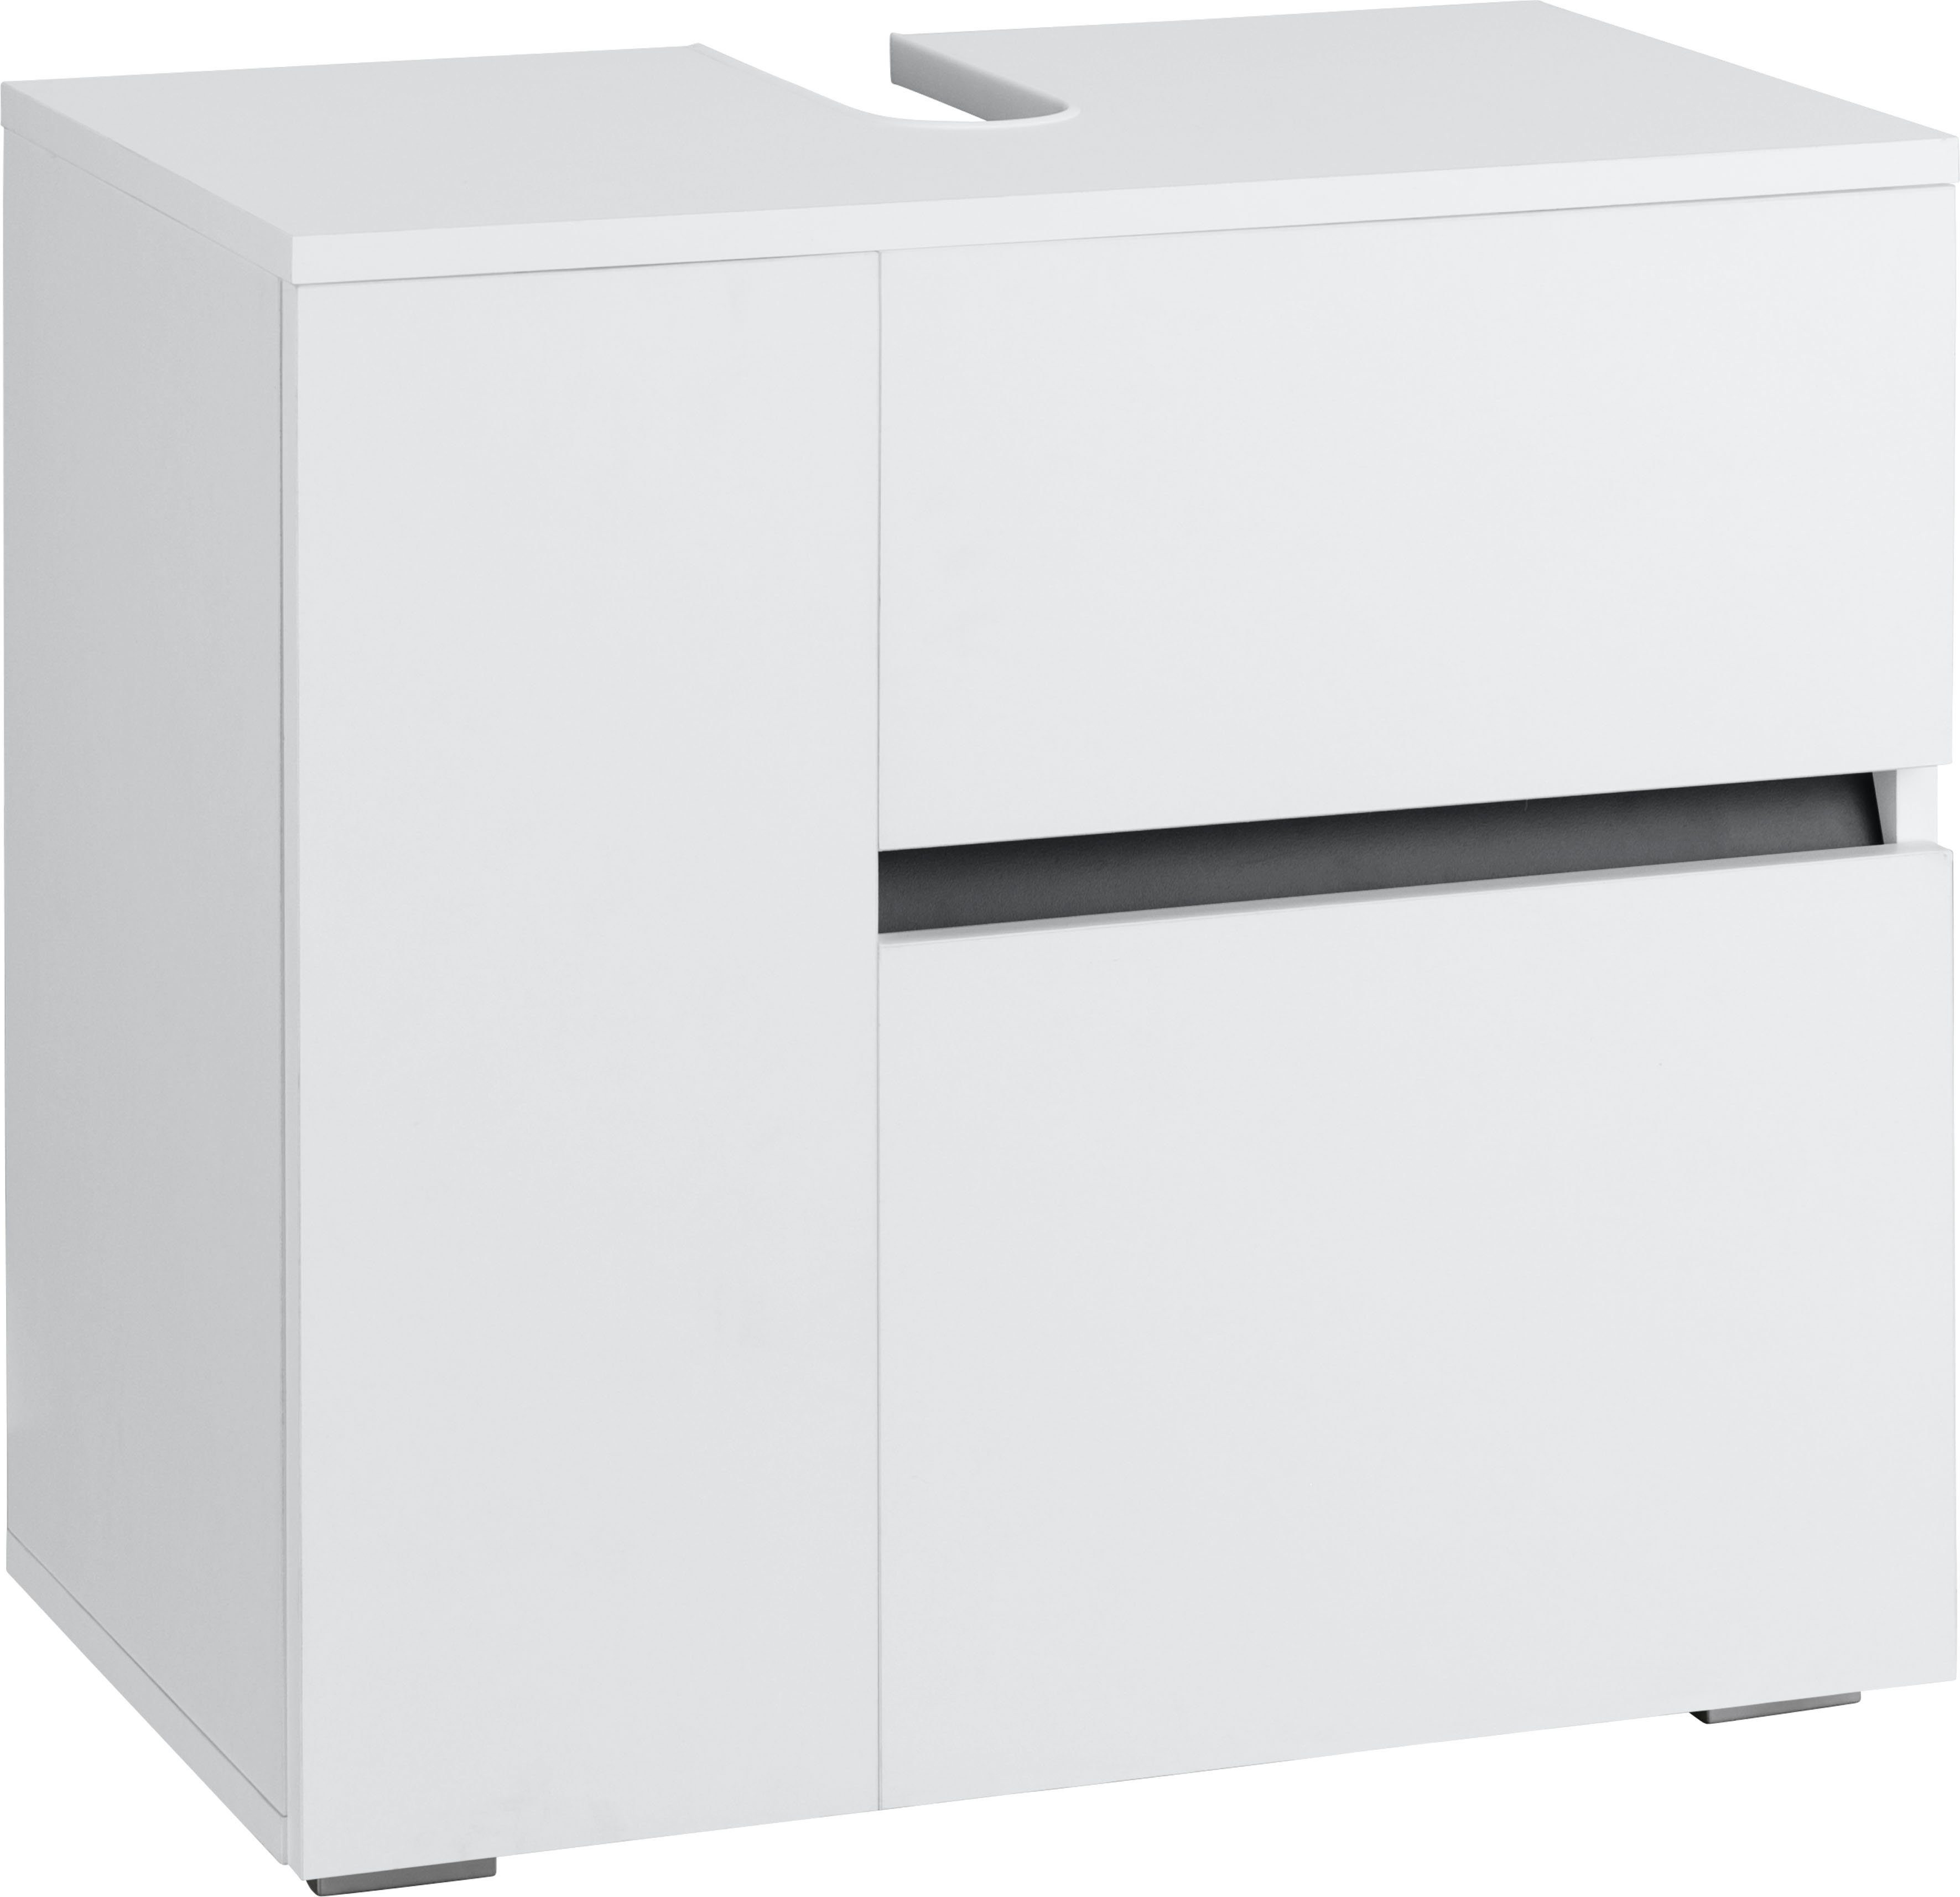 Home affaire Waschbeckenunterschrank Wisla Siphonausschnitt, Tür Push-to-open-Funktion, Breite 60 cm, Höhe 55 cm weiß/weiß | weiß